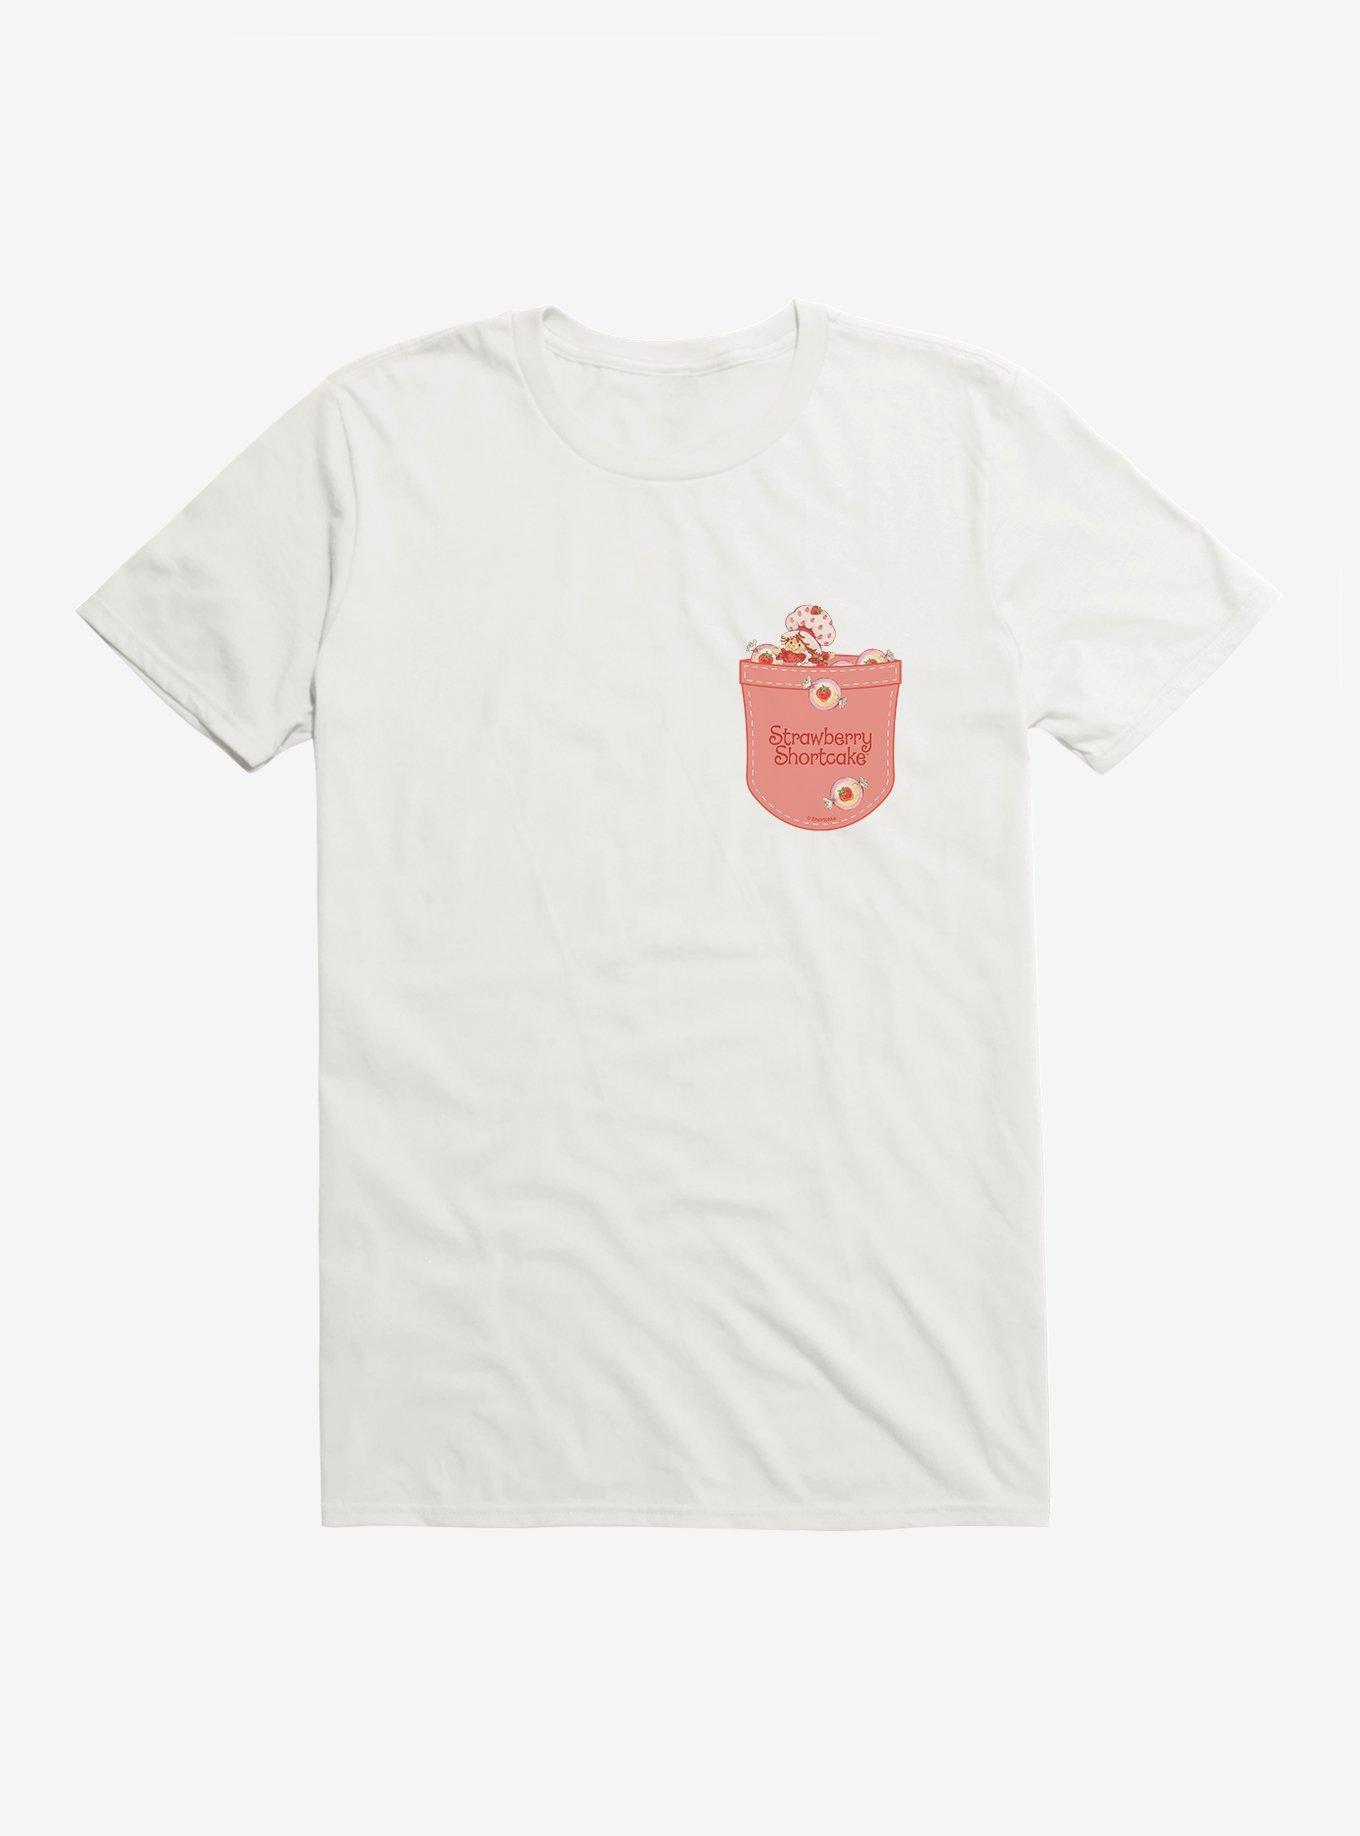 Strawberry Shortcake Pocket T-Shirt